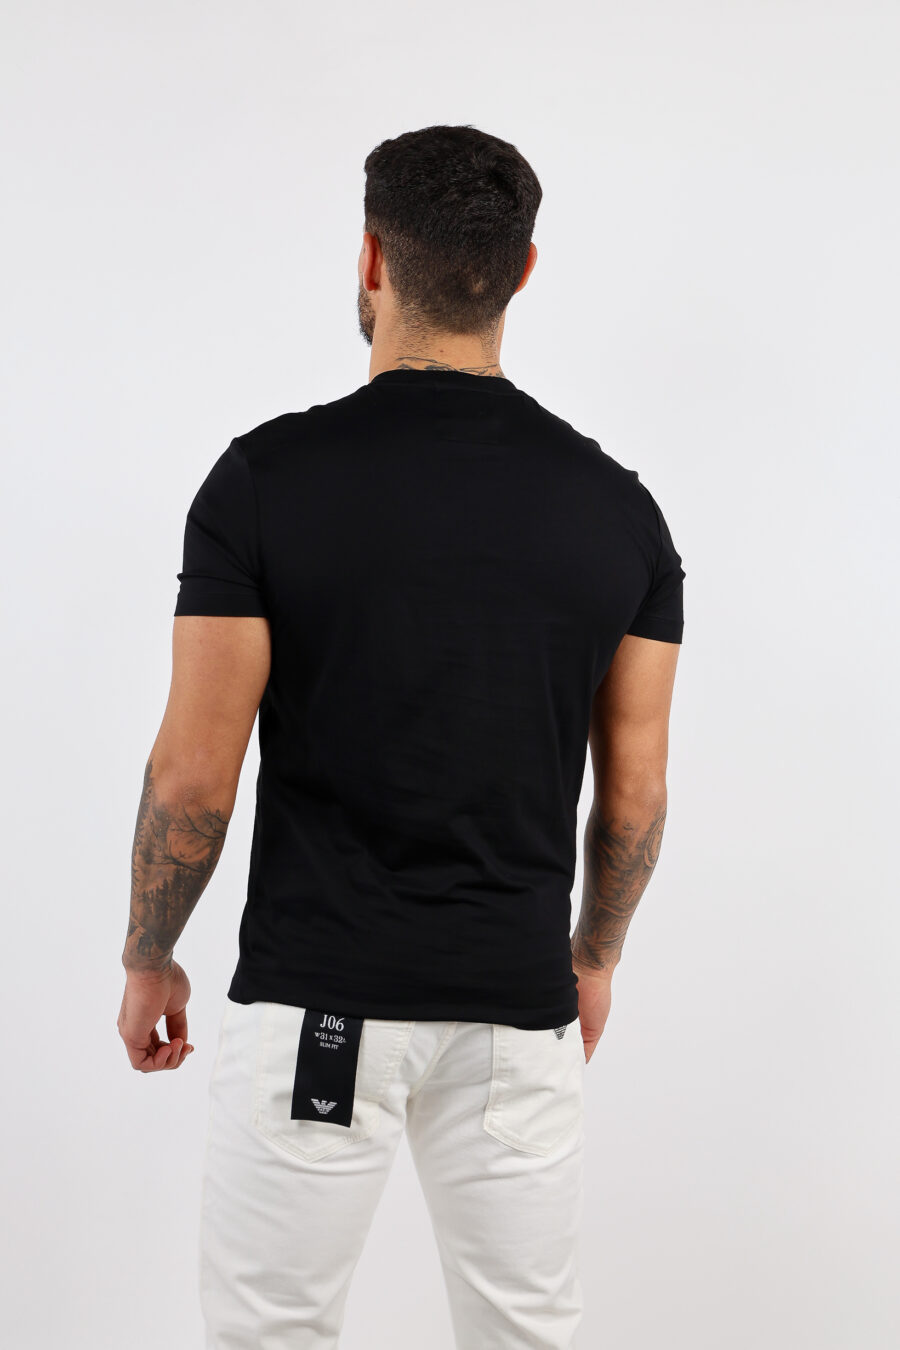 Camiseta negra con maxilogo letras blancas - BLS Fashion 90